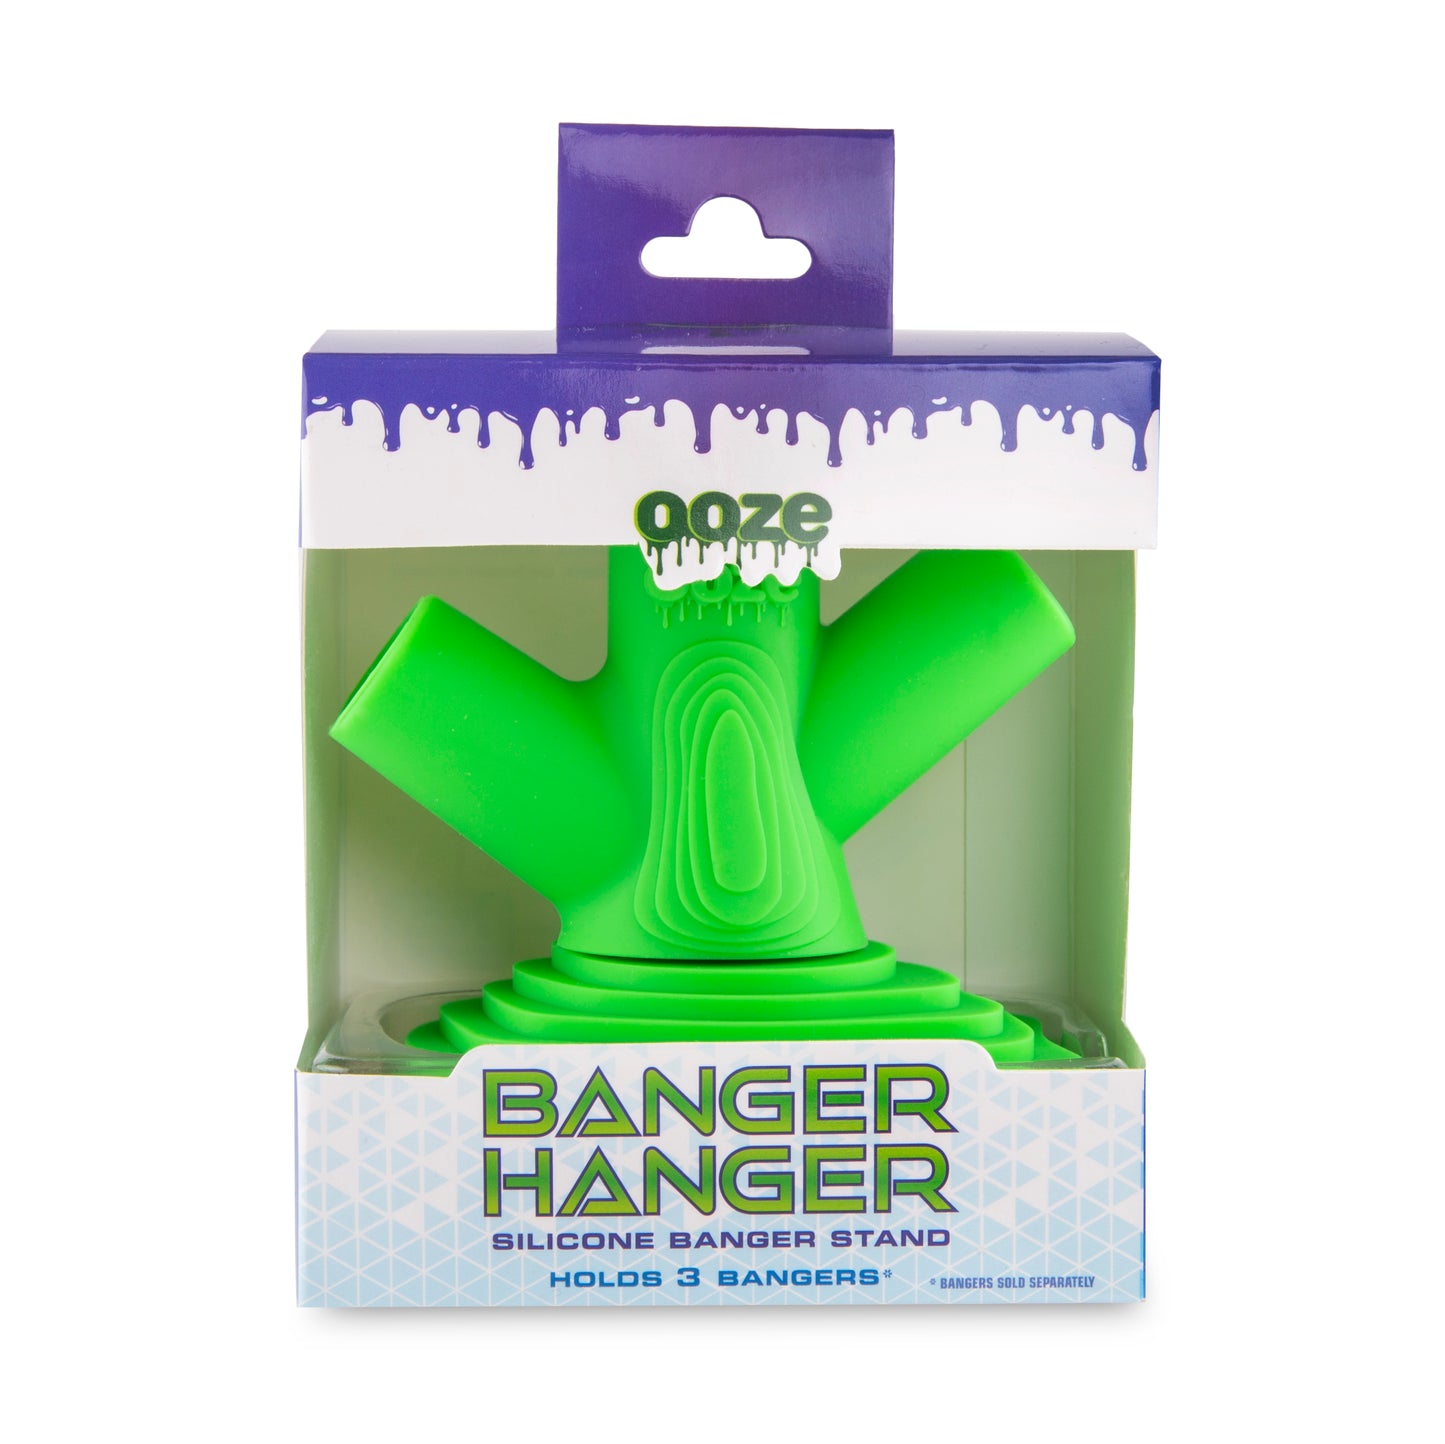 Ooze Banger Hanger Silicone Banger Stand - Slime Green